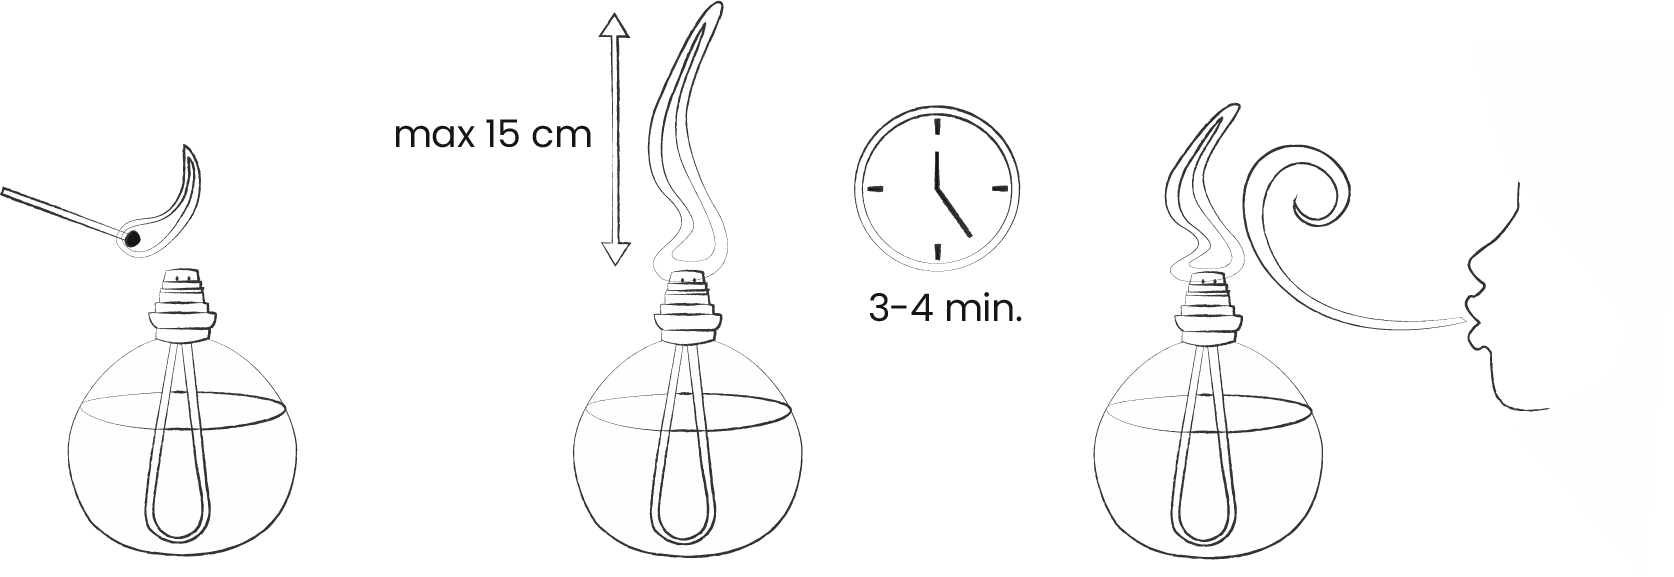 lampa katalityczna instrukcja krok IV